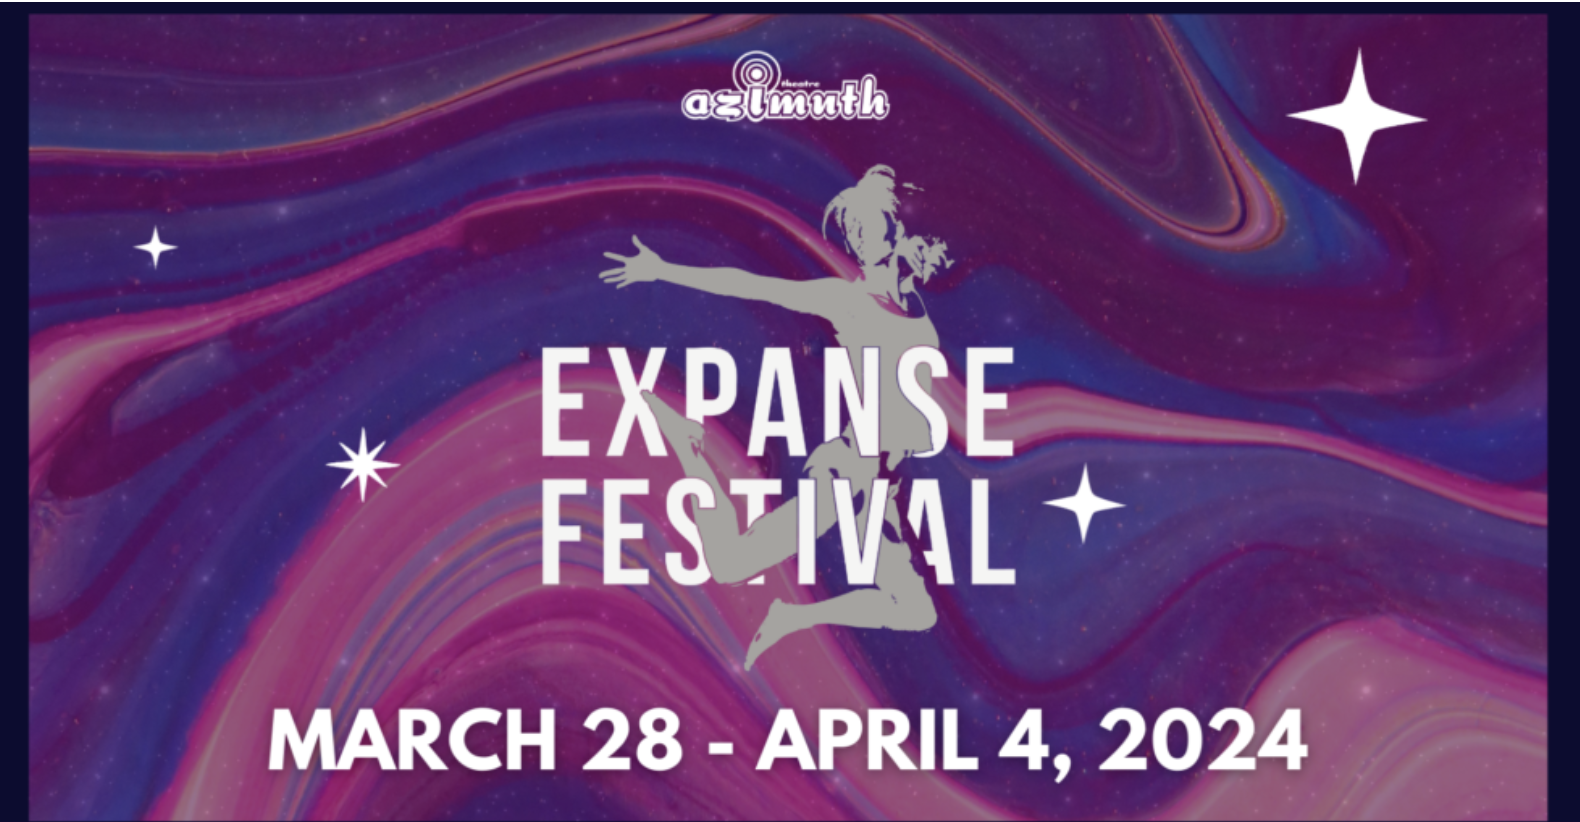 Expanse Festival 2024: Body-Based Stories Reframed